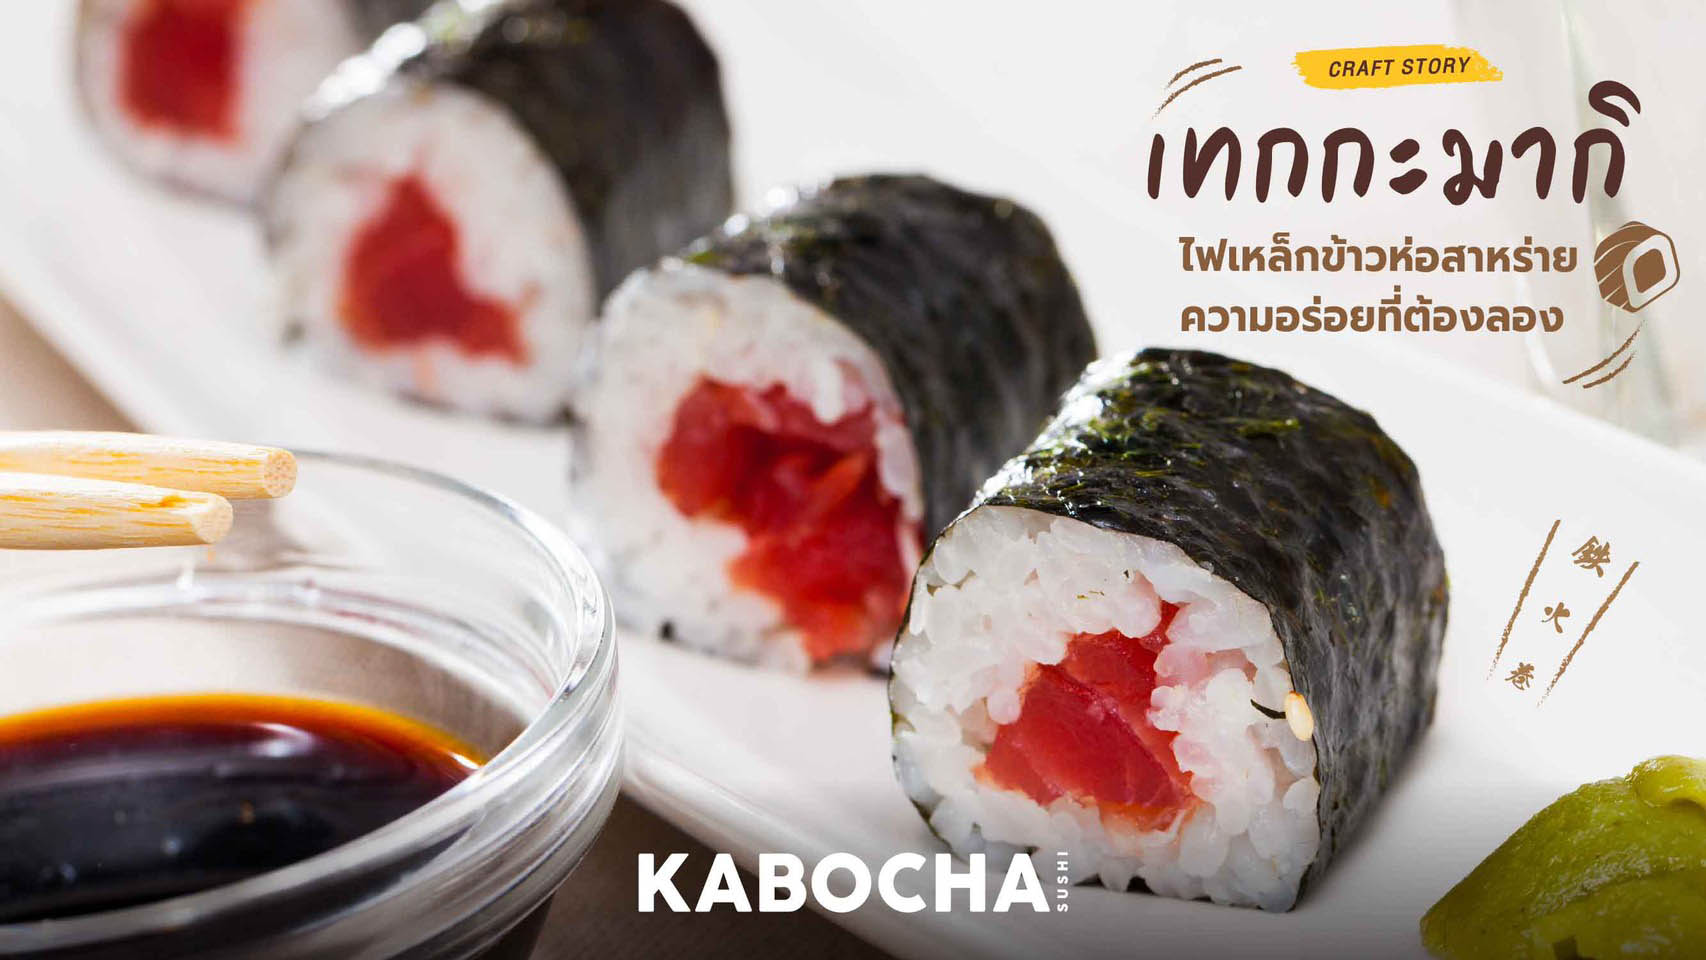 ร้านอาหารญี่ปุ่น kabocha sushi delivery แนะนำ อาหารญี่ปุ่น ข้าวห่อสาหร่าย เทกกะมากิ